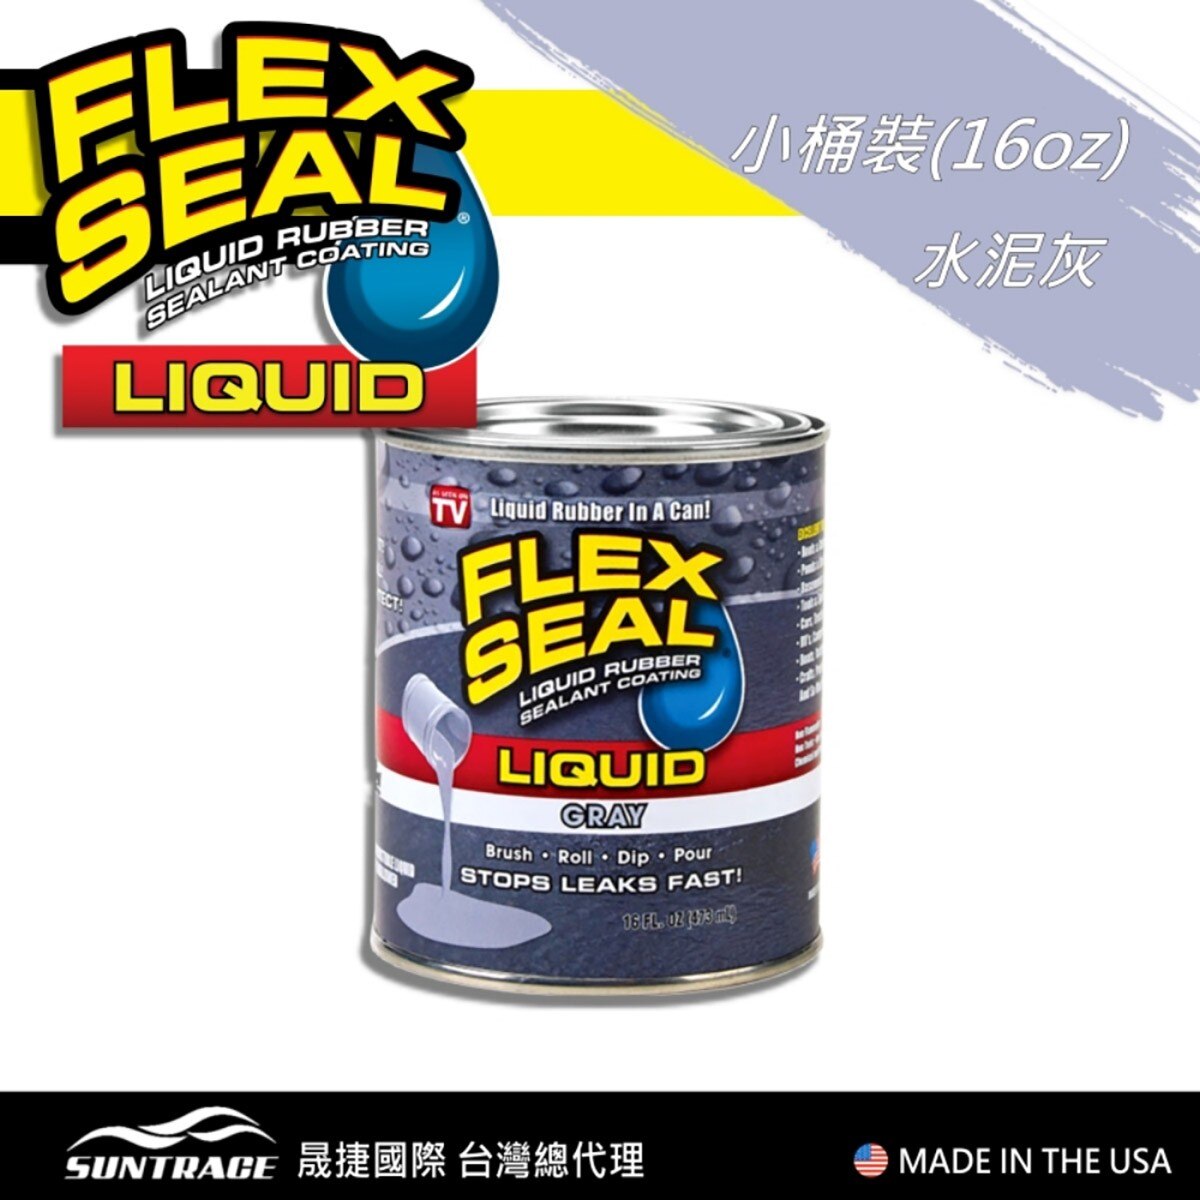 美國製FLEX SEAL LIQUID萬用止漏膠水泥灰，固化乾燥後呈彈性橡膠，富彈性，耐曬抗風化，不變質、不乾裂，止漏膠可滲入縫隙完美填補。